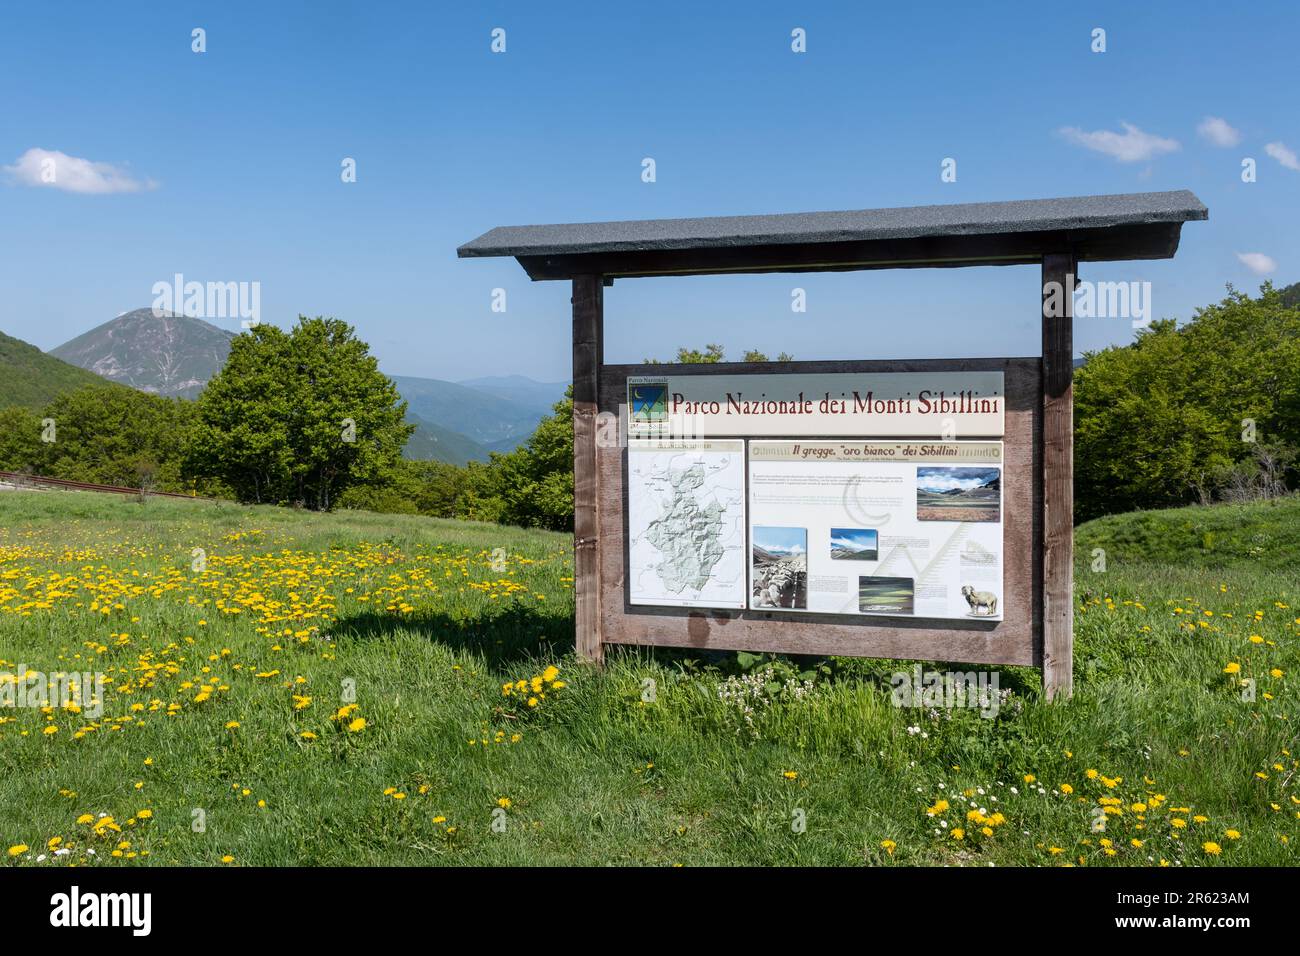 Centre d'information du parc national de Sibillini (Parco Nazionale dei Monti Sibilini), Ombrie, Italie, Europe Banque D'Images